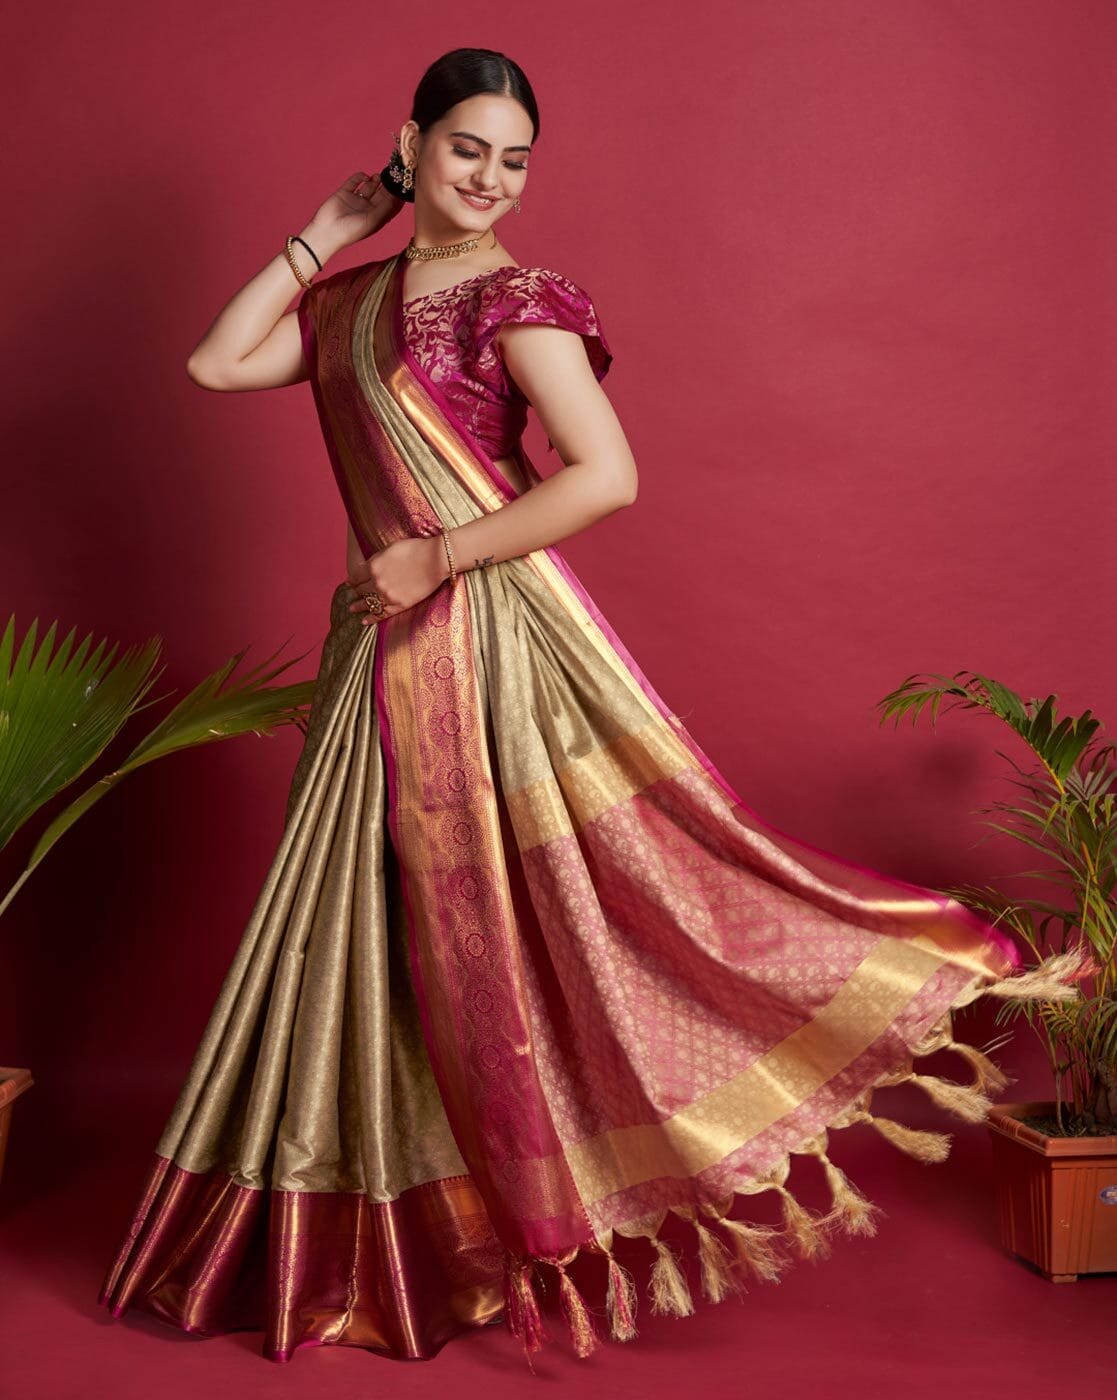 Shop Latest Pure Kanjivaram Silk Green Saree Blouse Designs Online – Sunasa